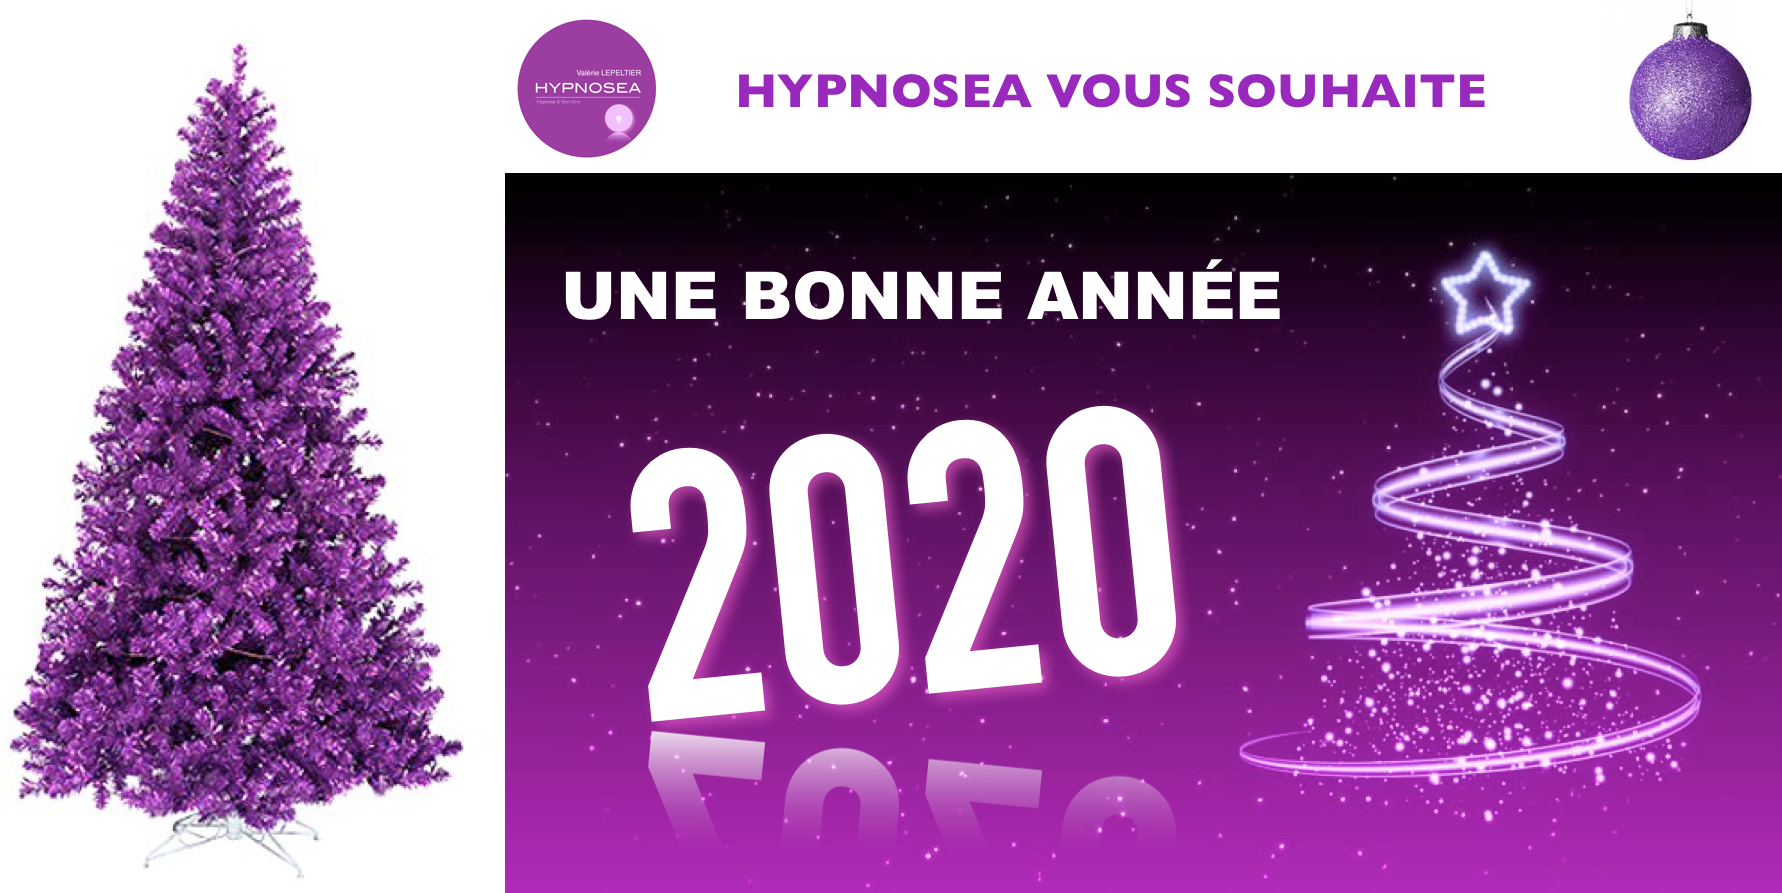 Hypnosea vous souhaite une bonne année 2020 !